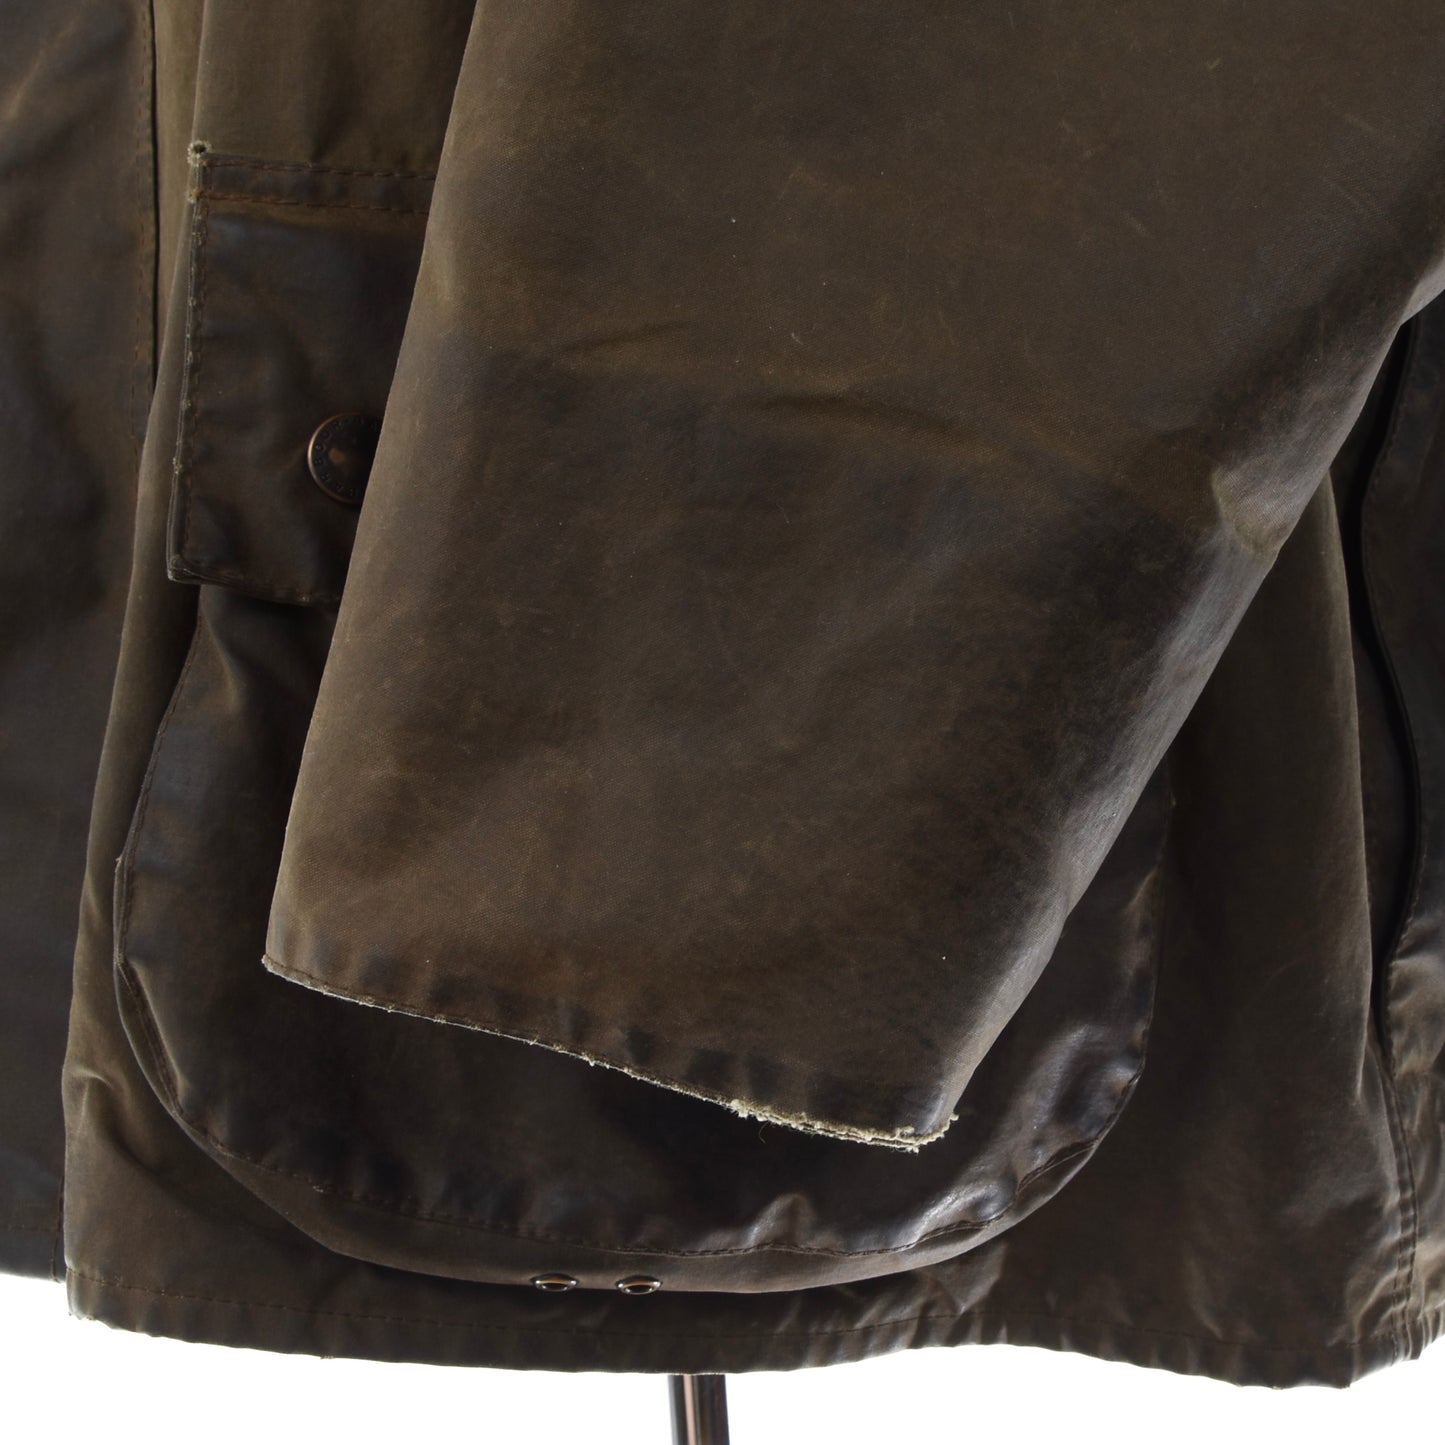 Barbour Moorland Jacke gewachst A50 Größe C50/127cm - Grün